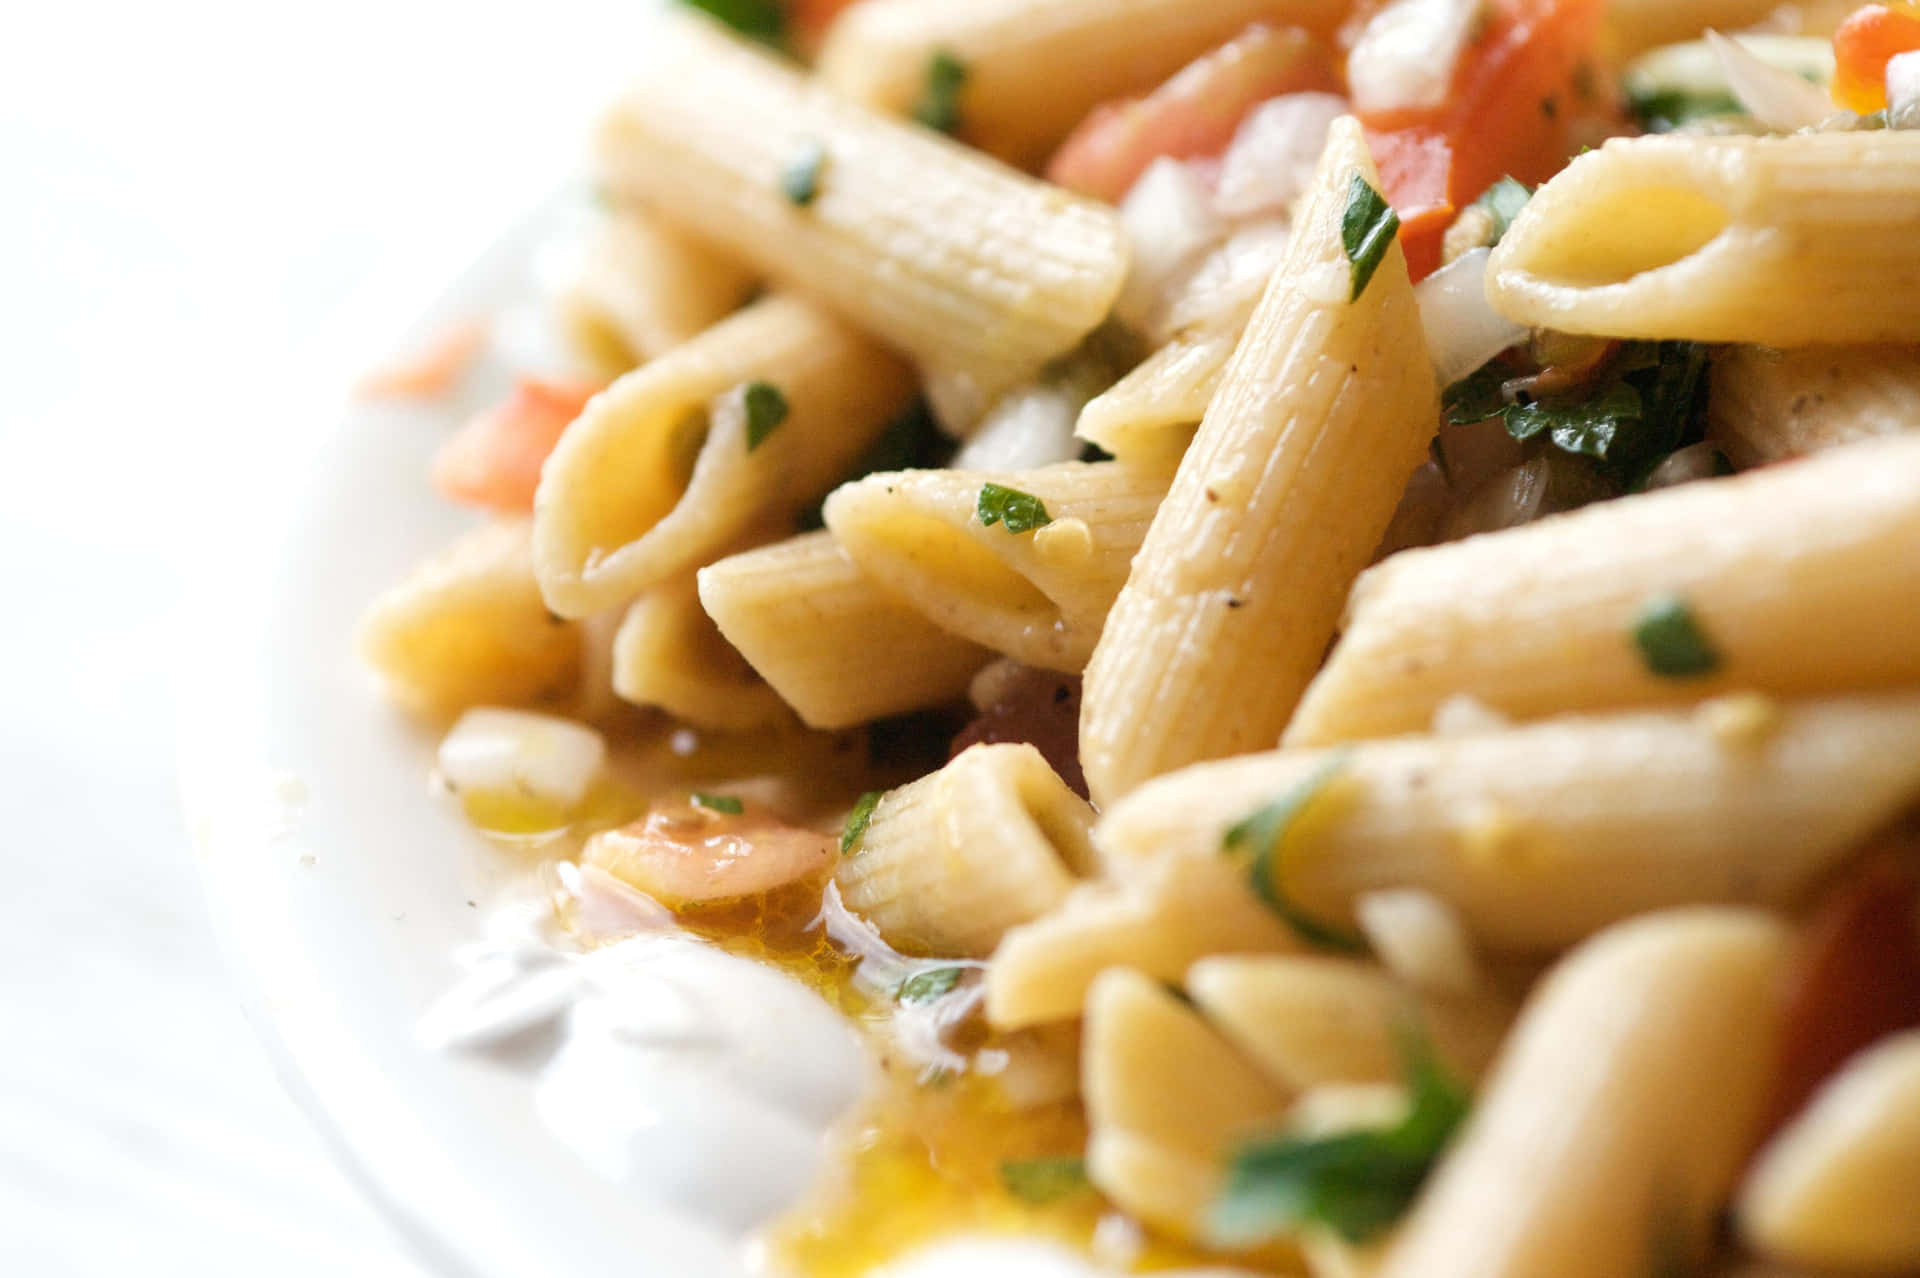 Enjoy a bowl of delicious pasta